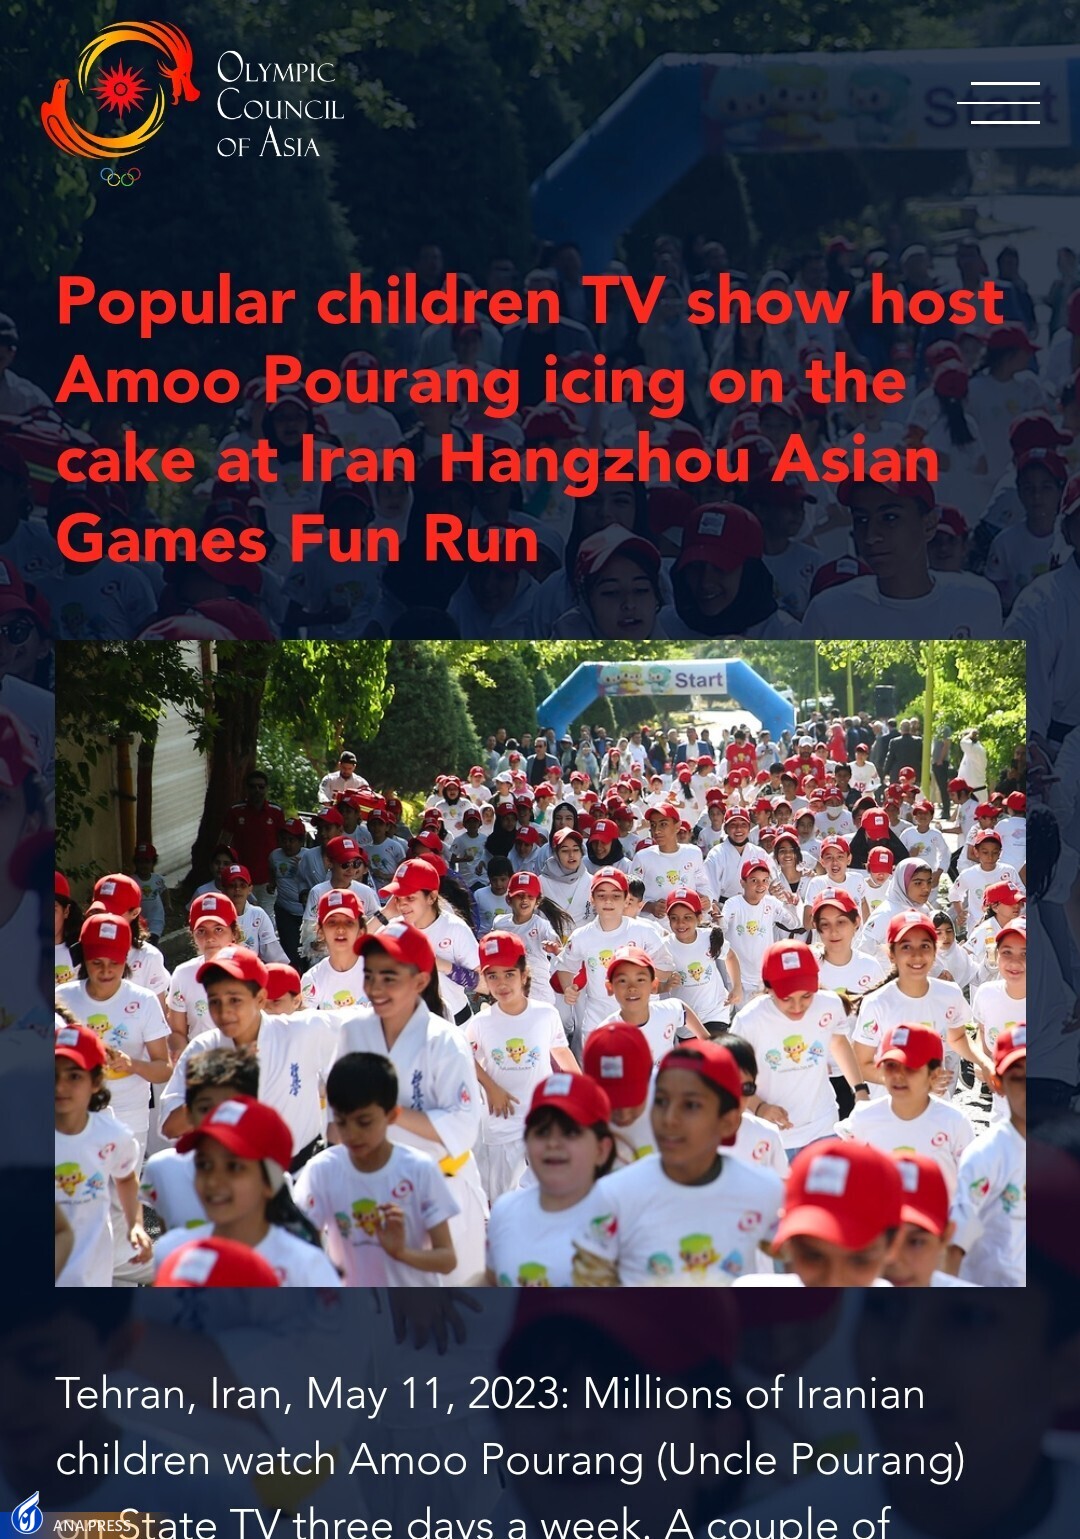 بازتاب رویداد Fun Run ایران در سایت شورای المپیک آسیا+ عکس